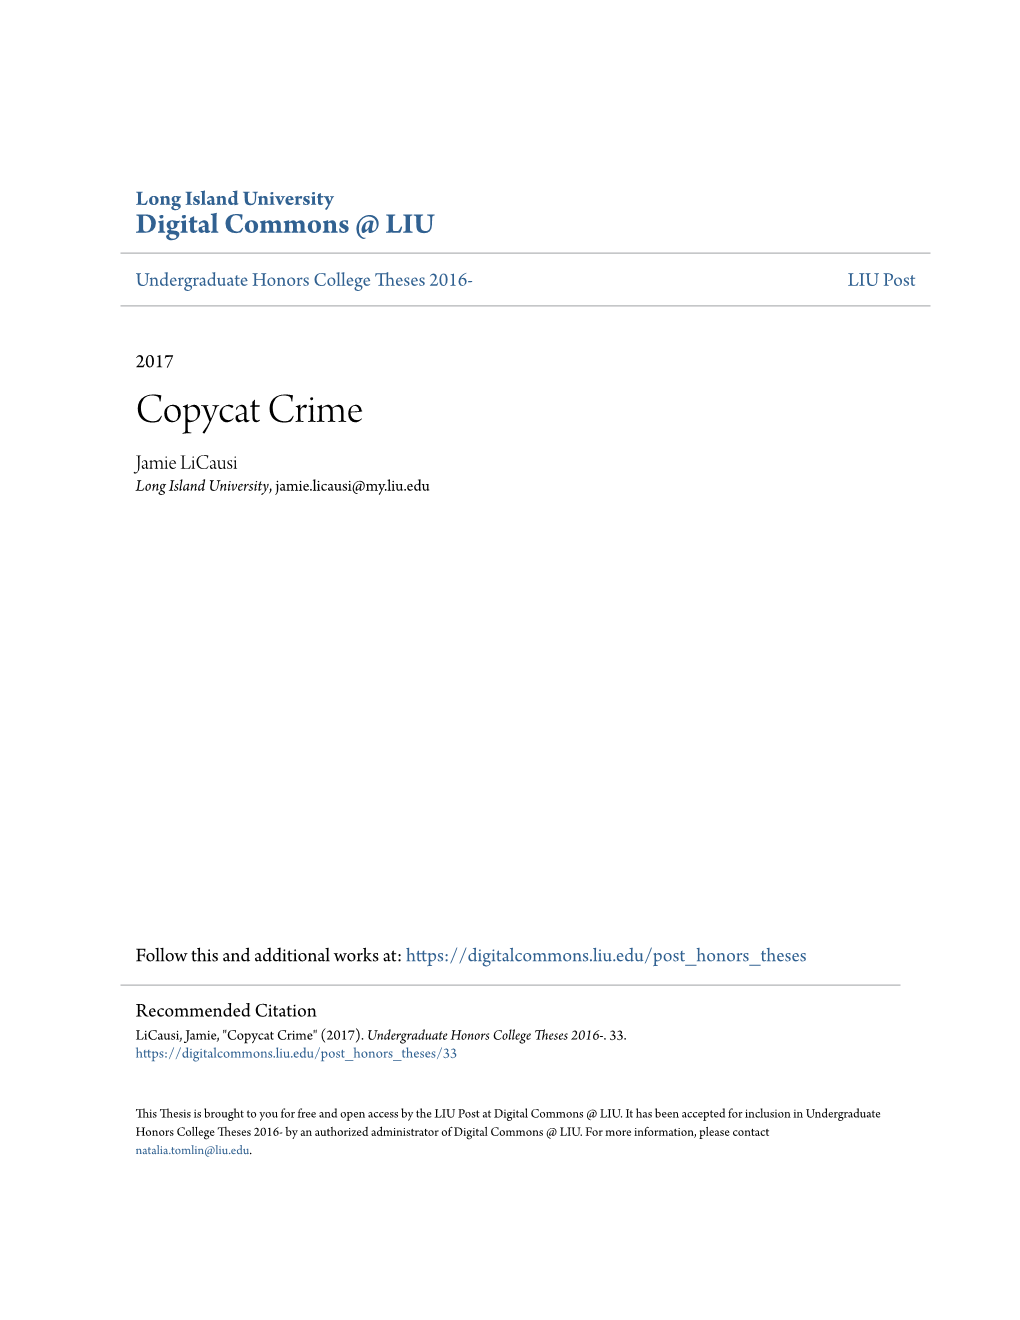 Copycat Crime Jamie Licausi Long Island University, Jamie.Licausi@My.Liu.Edu